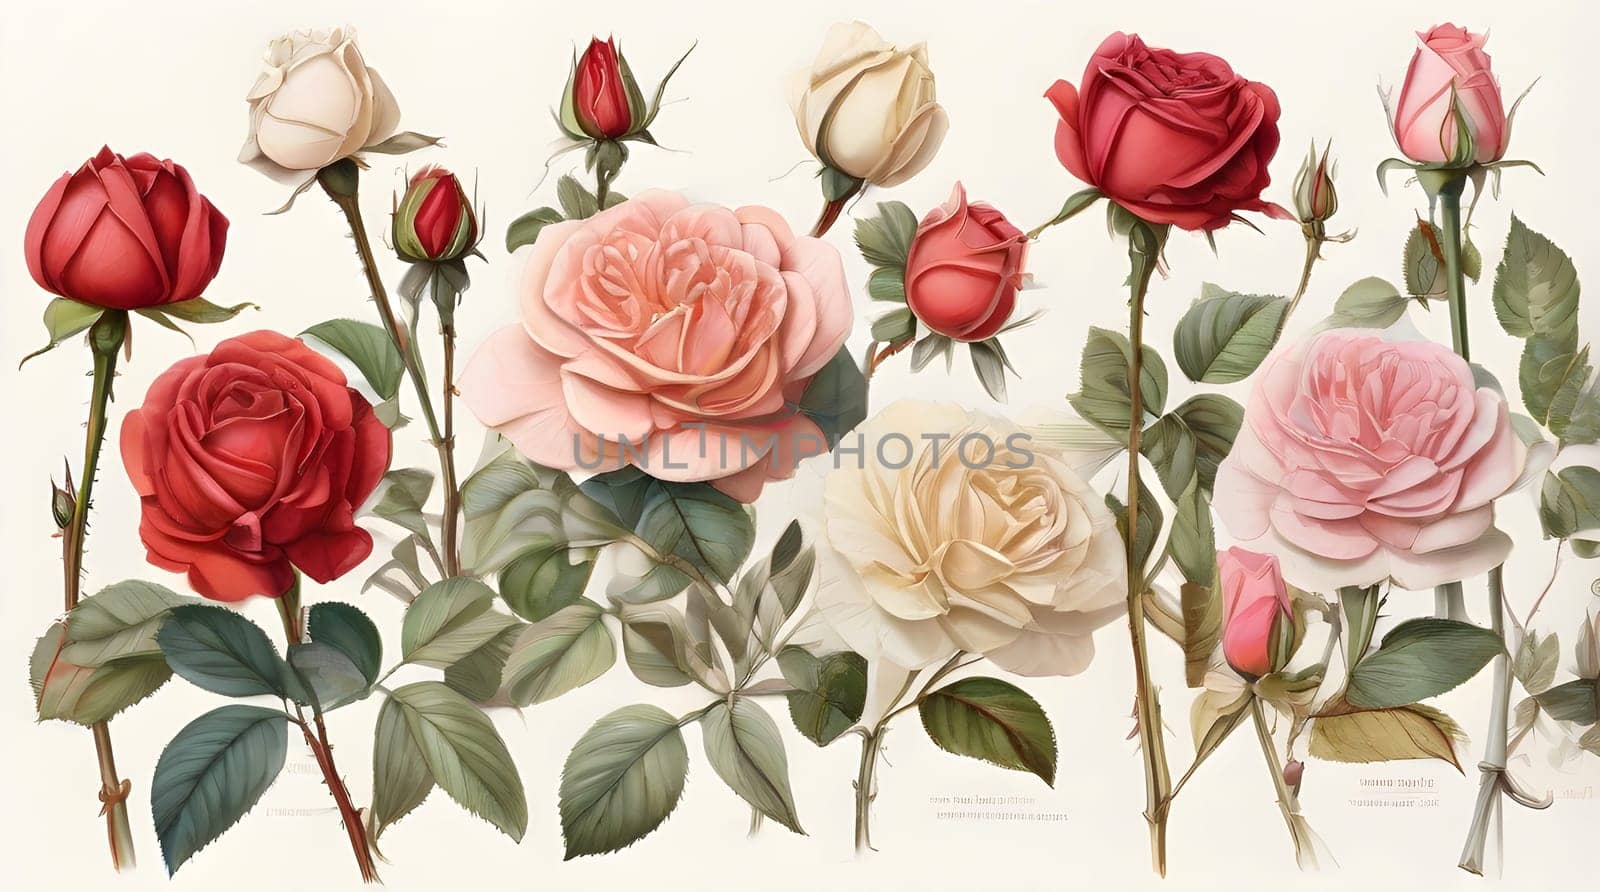 types of roses on white background, botanical illustration.